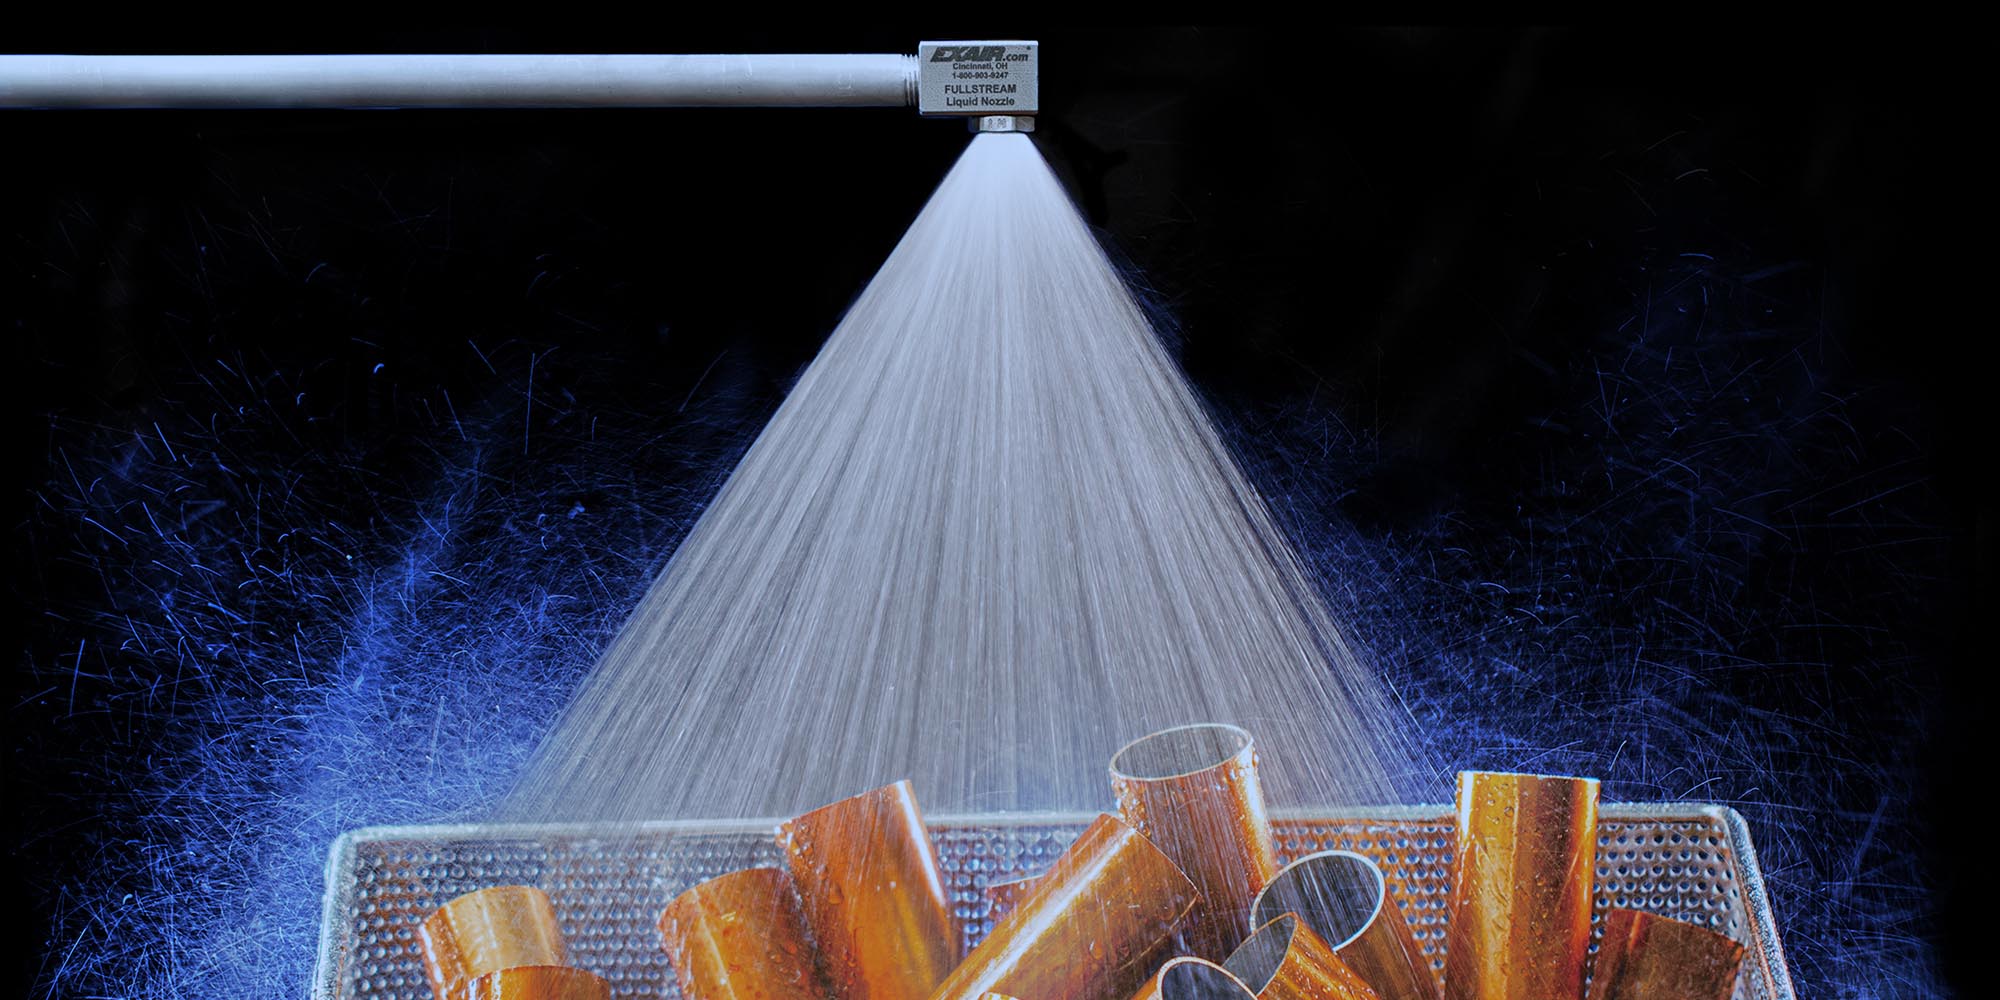 FullStream Cone Liquid Atomizing Spray Nozzles